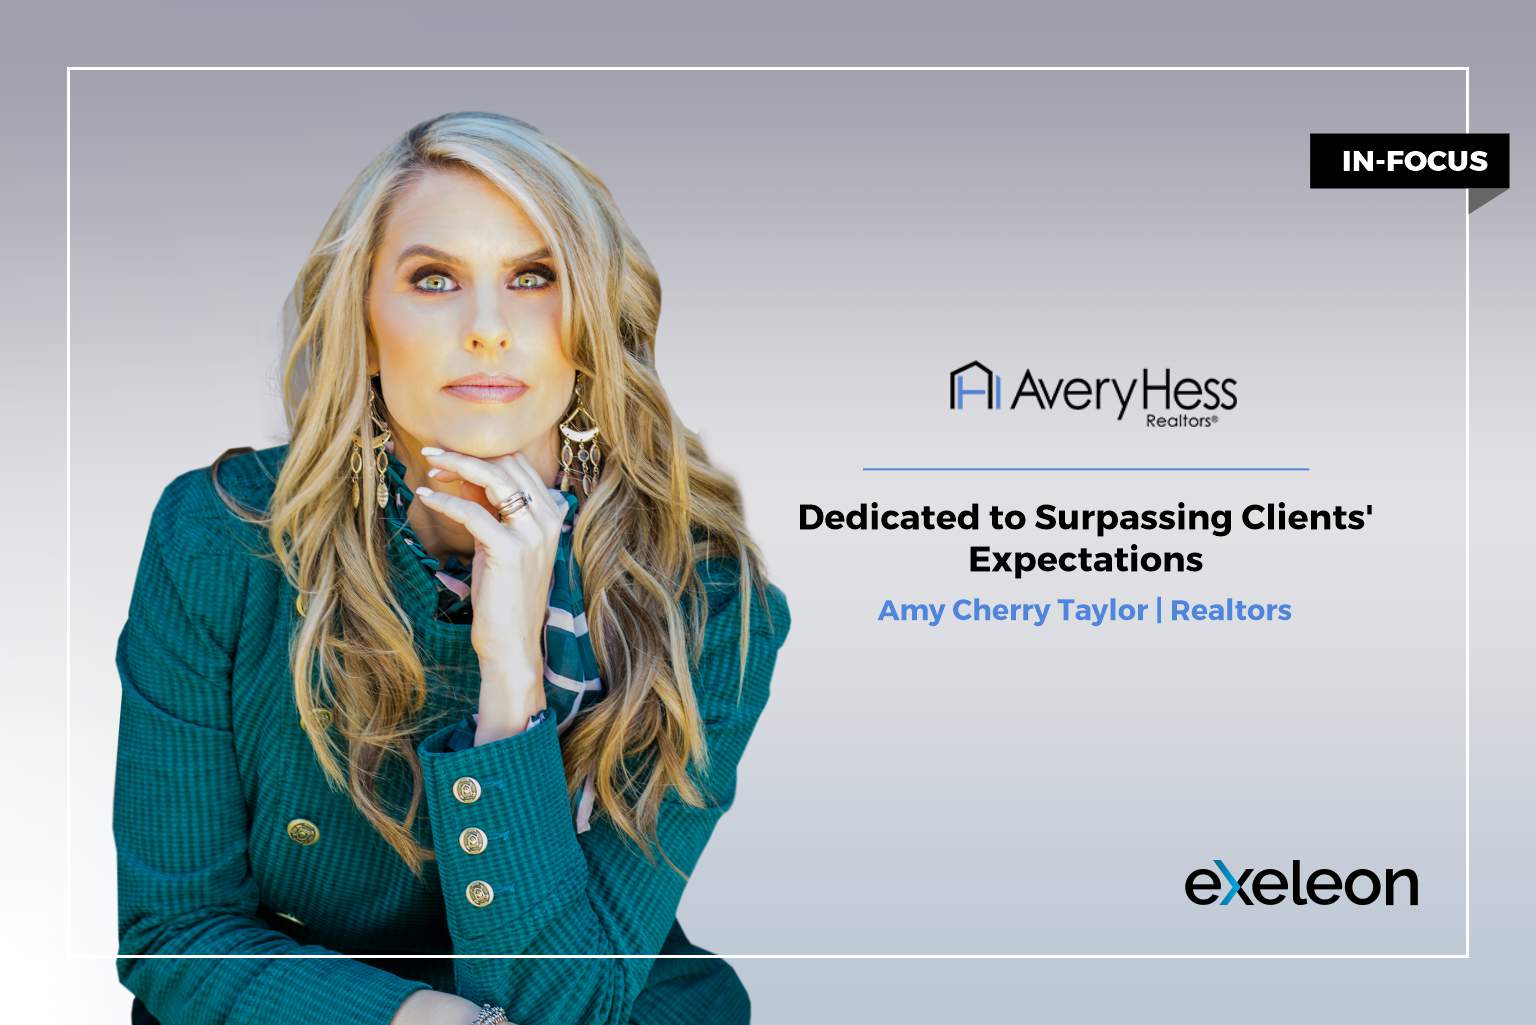 Amy Cherry Taylor_Exeleon Magazine